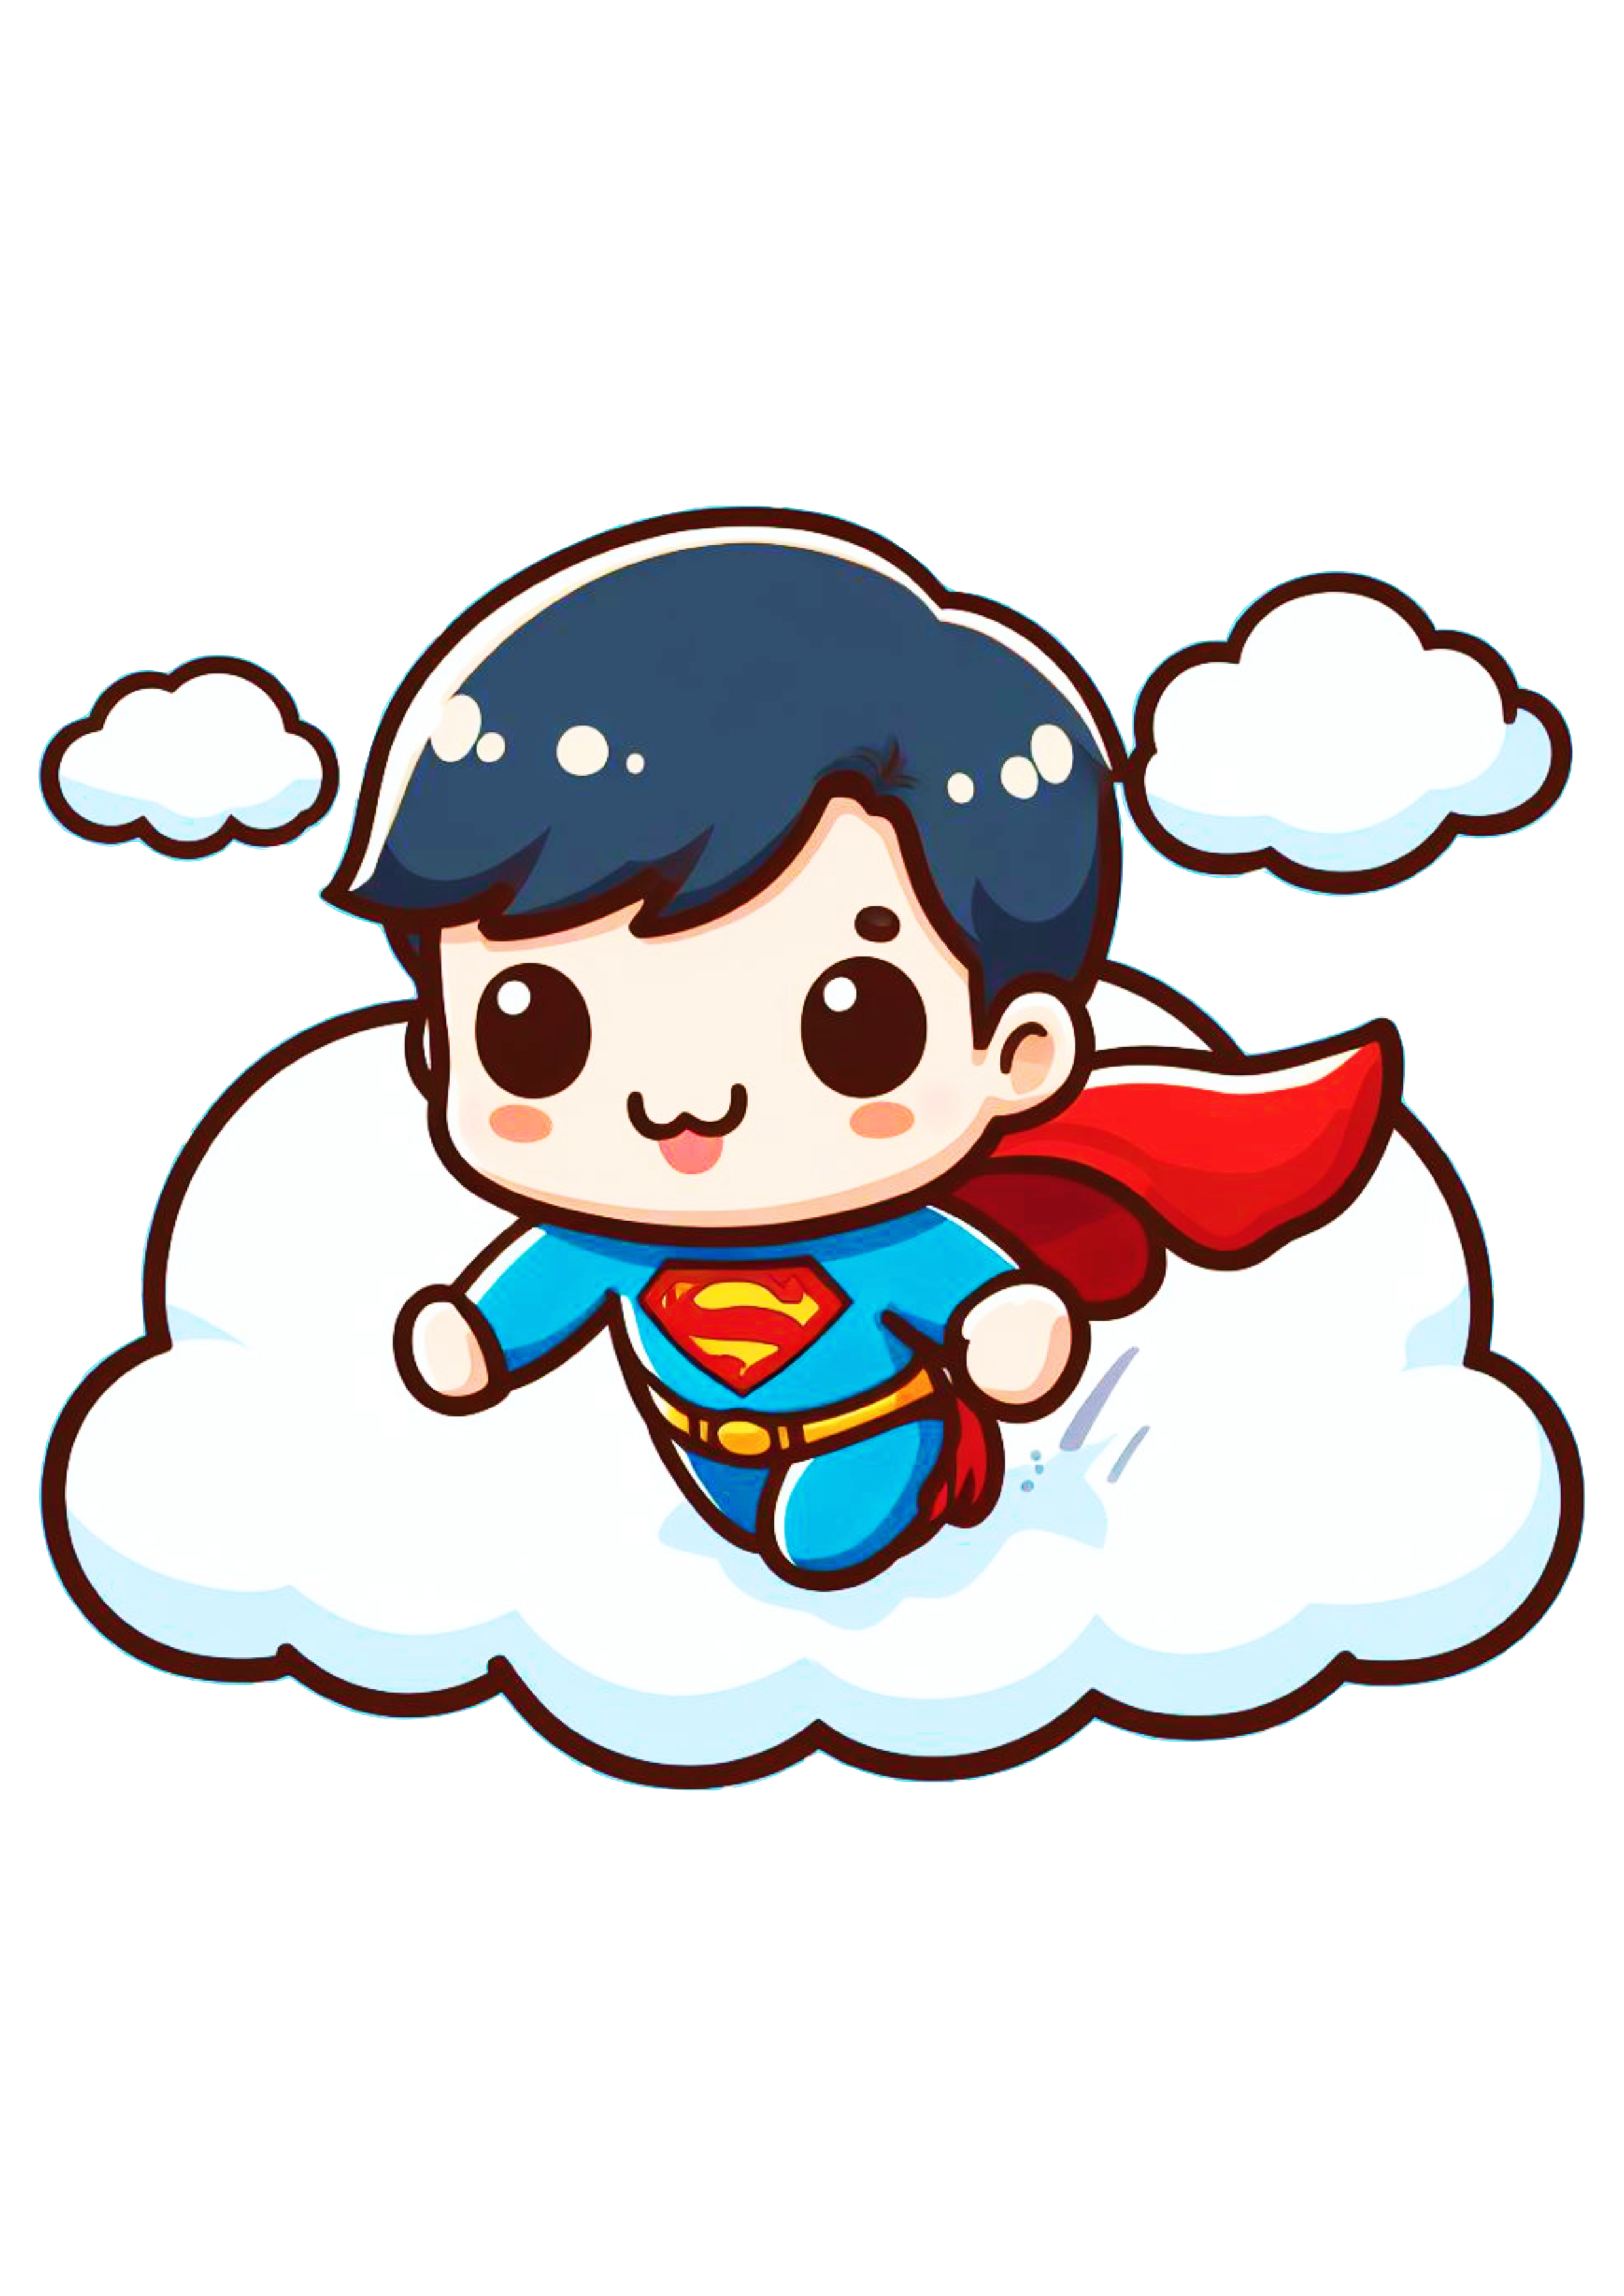 Super homem voando nas nuvens desenho fofinho infantil cute chibi baby png